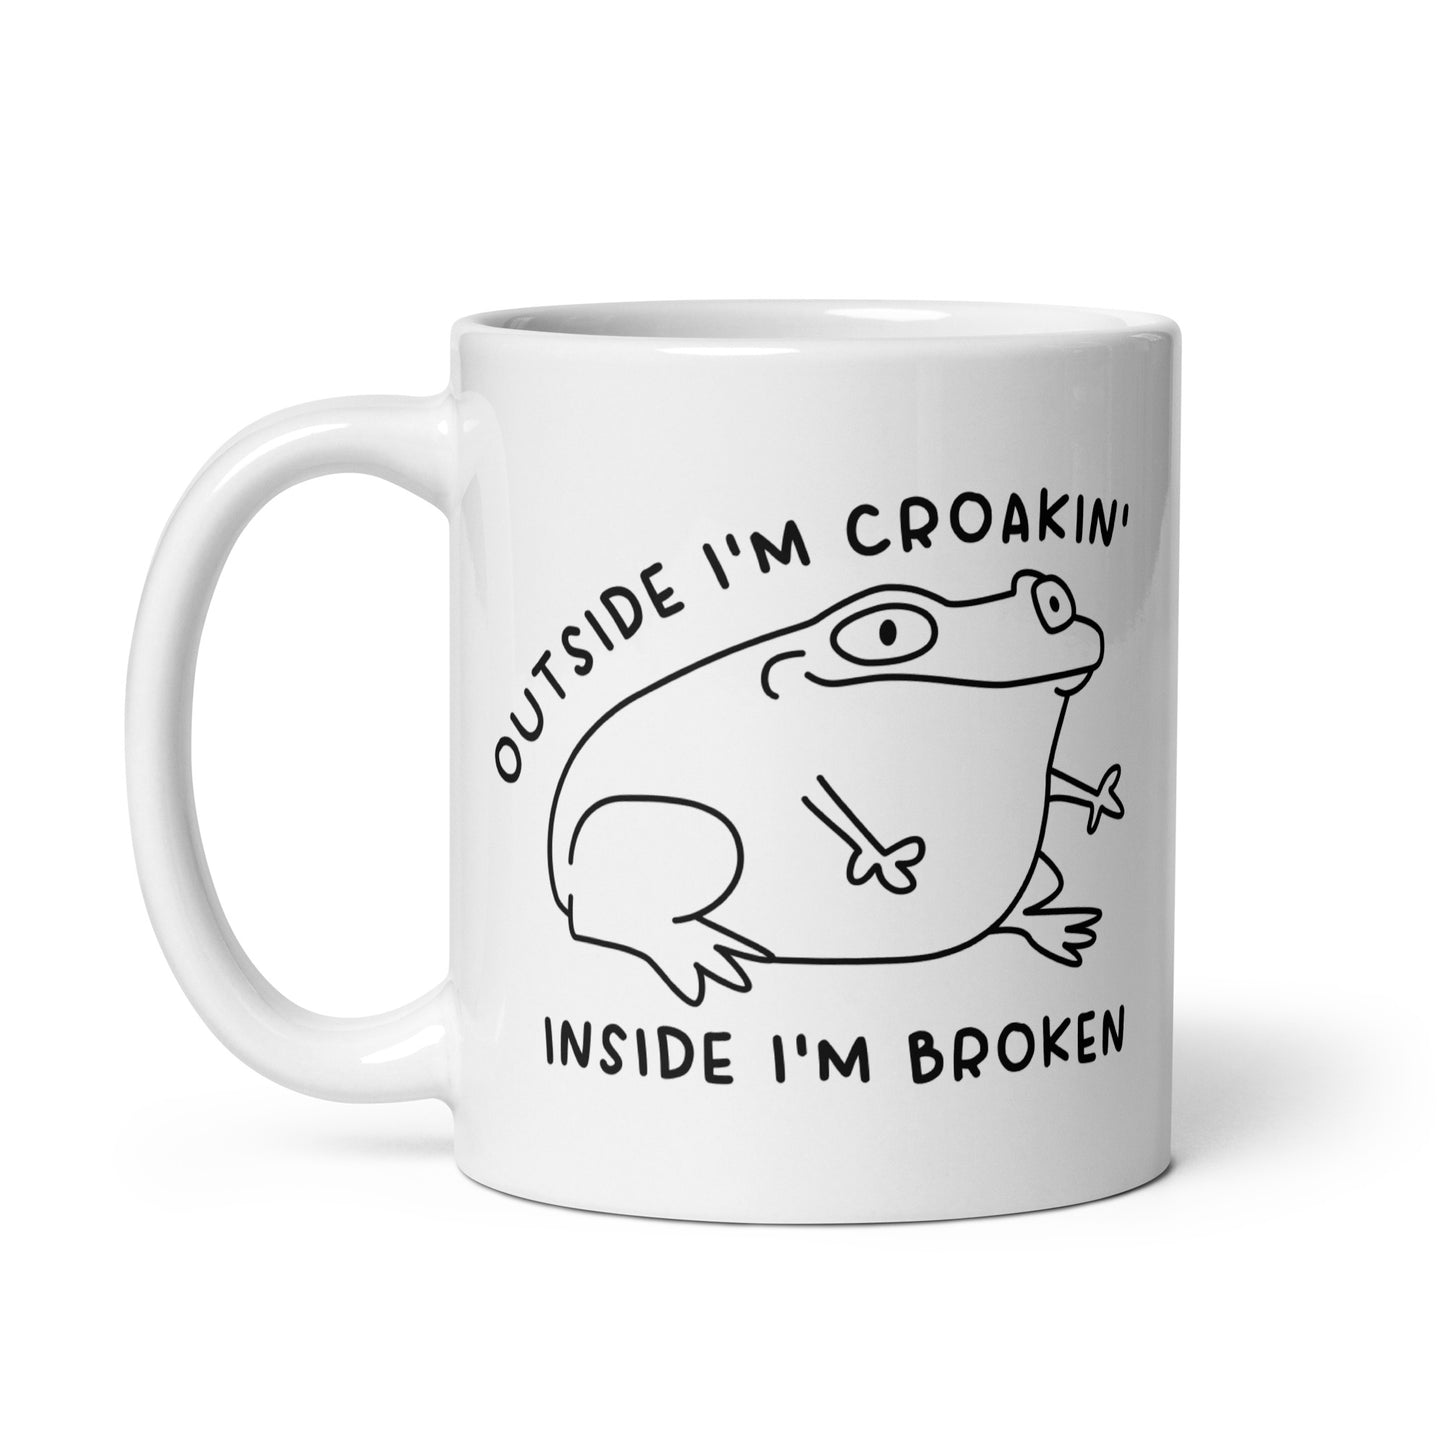 Outside I'm Croakin' mug